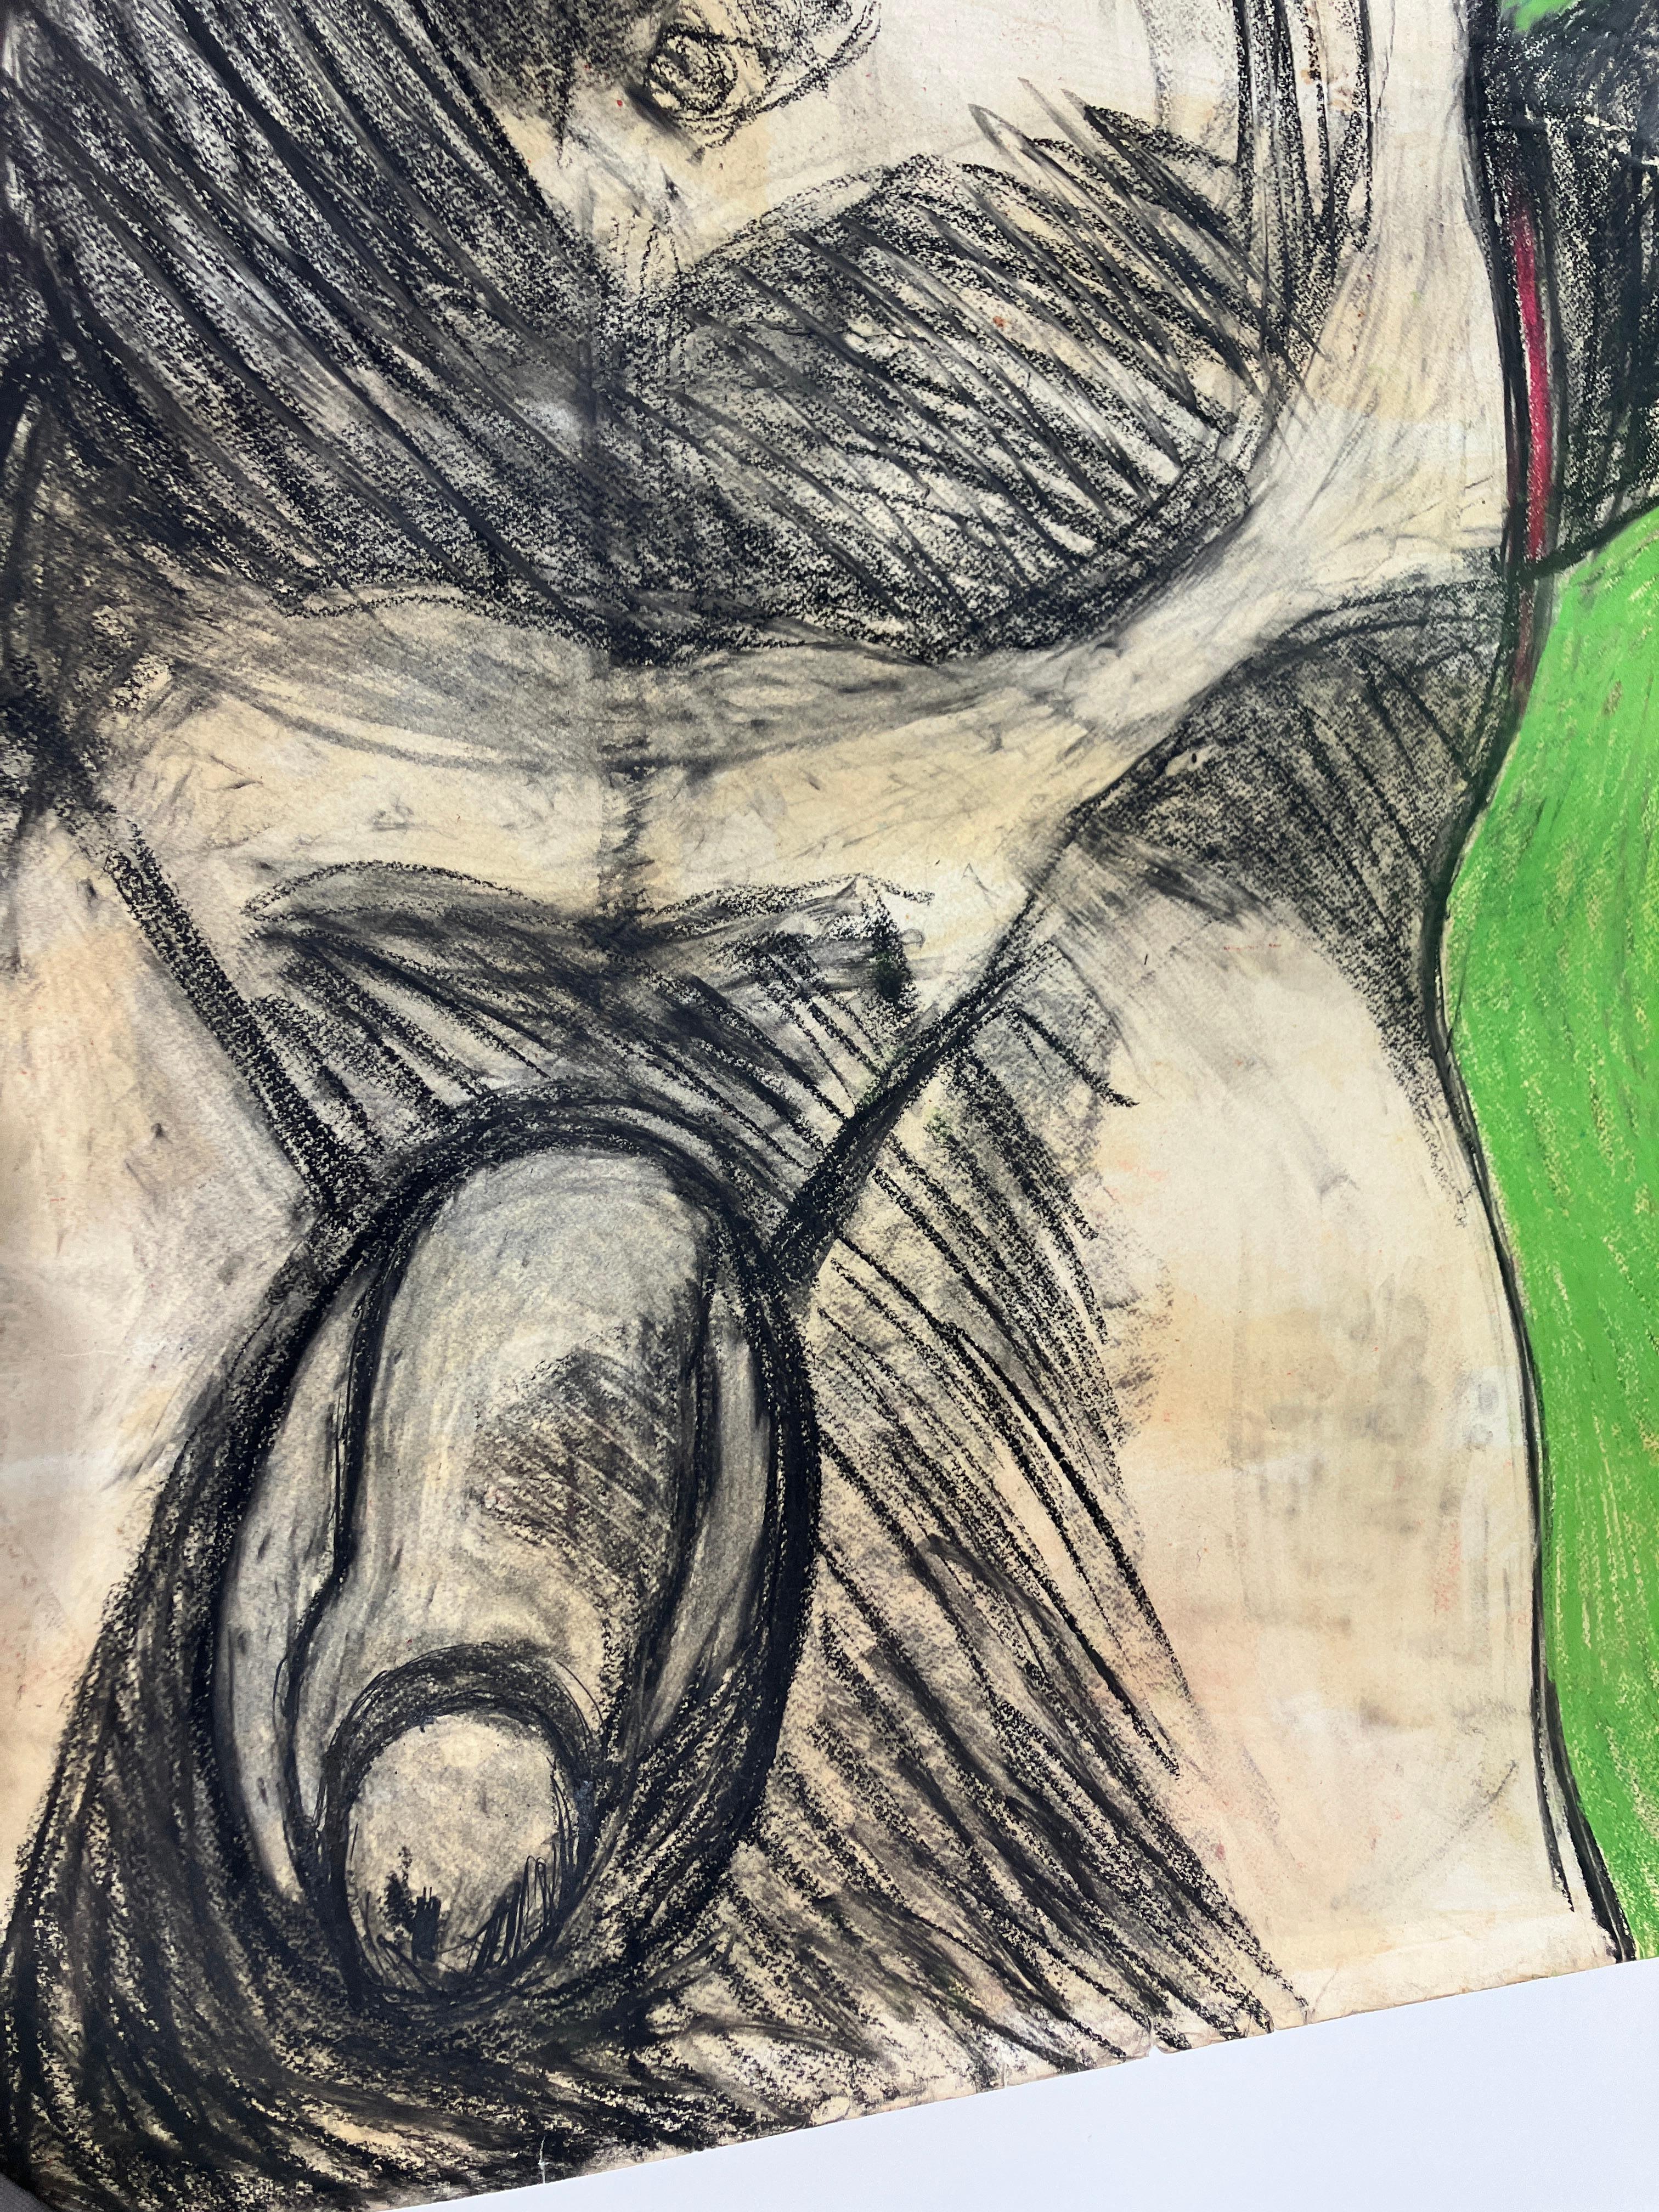 Recanato y compañero, viernes 3 de junio 2016,  par Celso Castro
Crayon Pastel sur papier d'archivage
Taille de l'image : 59 H in. x 39.5 in. W 

Au dos du tableau :
Sans titre, 1986
Crayon sur papier d'archivage
Taille de l'image : 39.5 H in. x 59